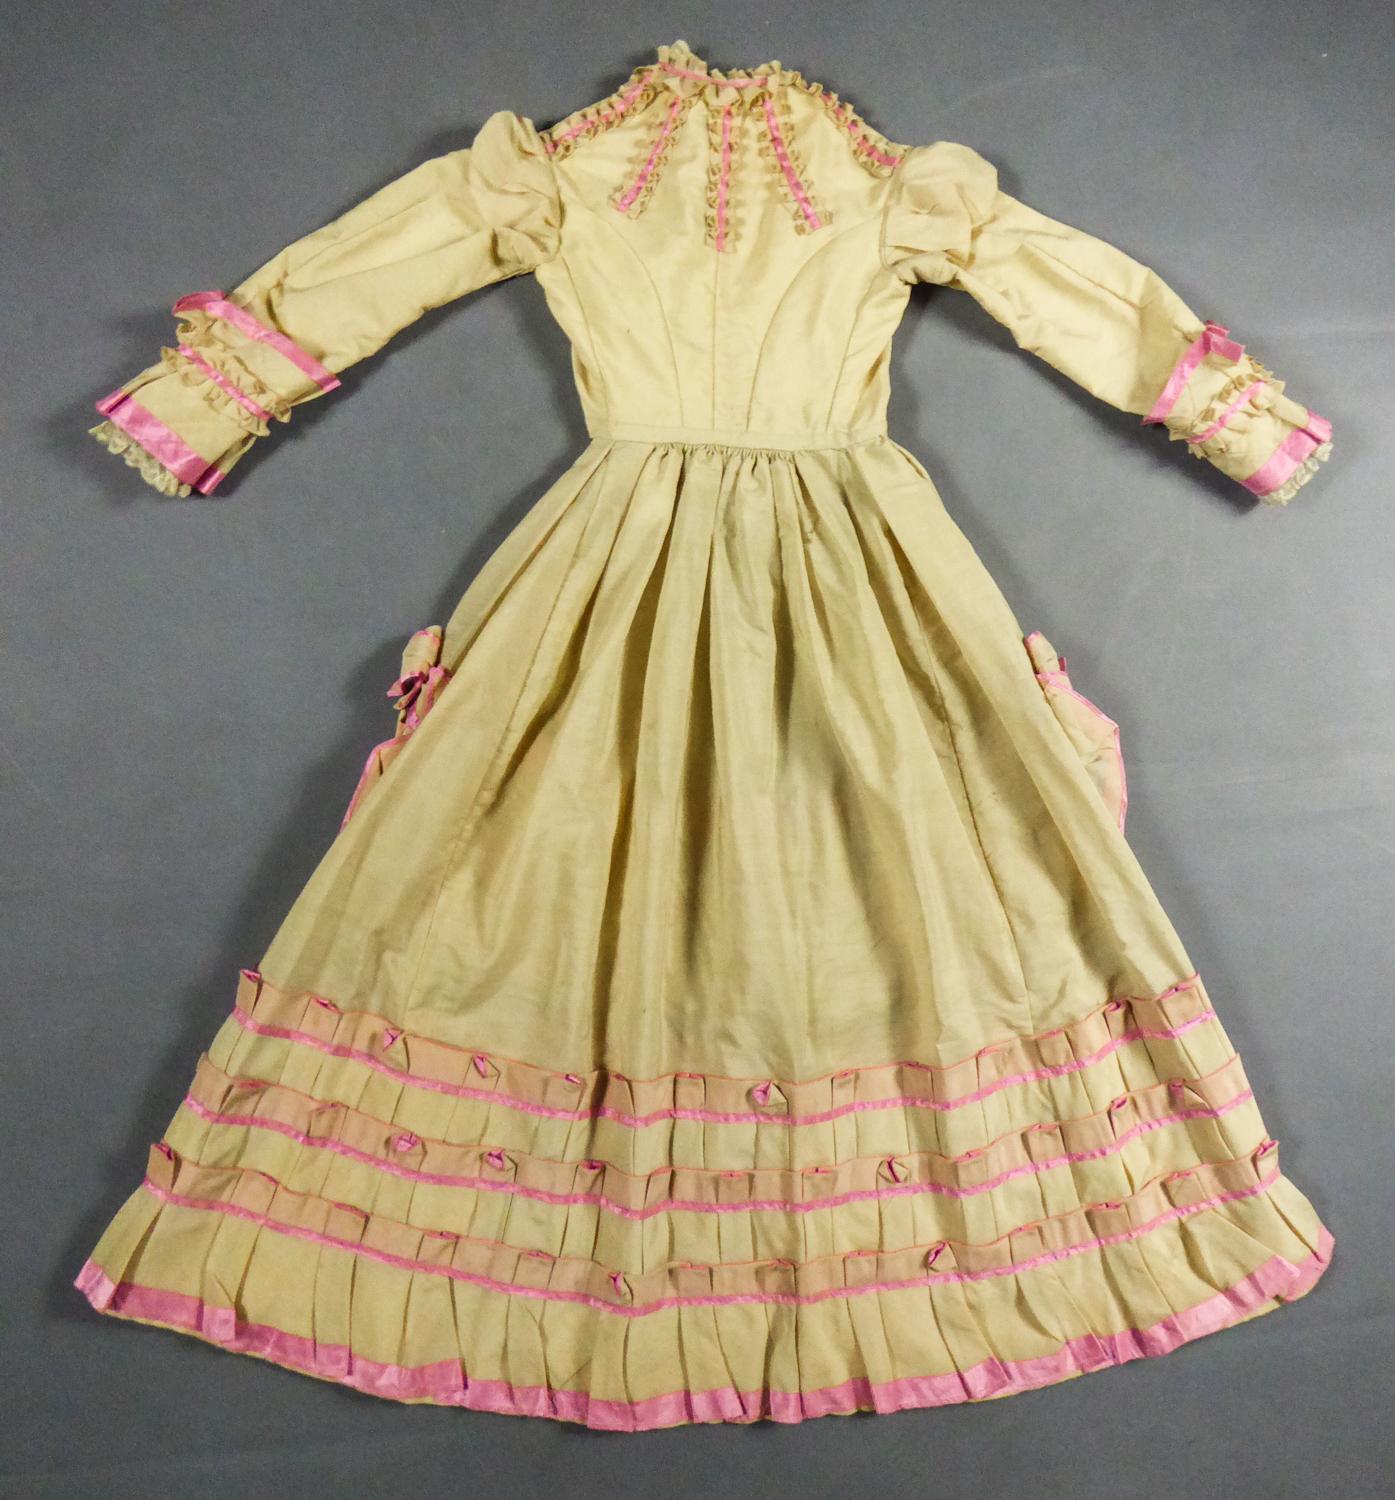 1880 dress